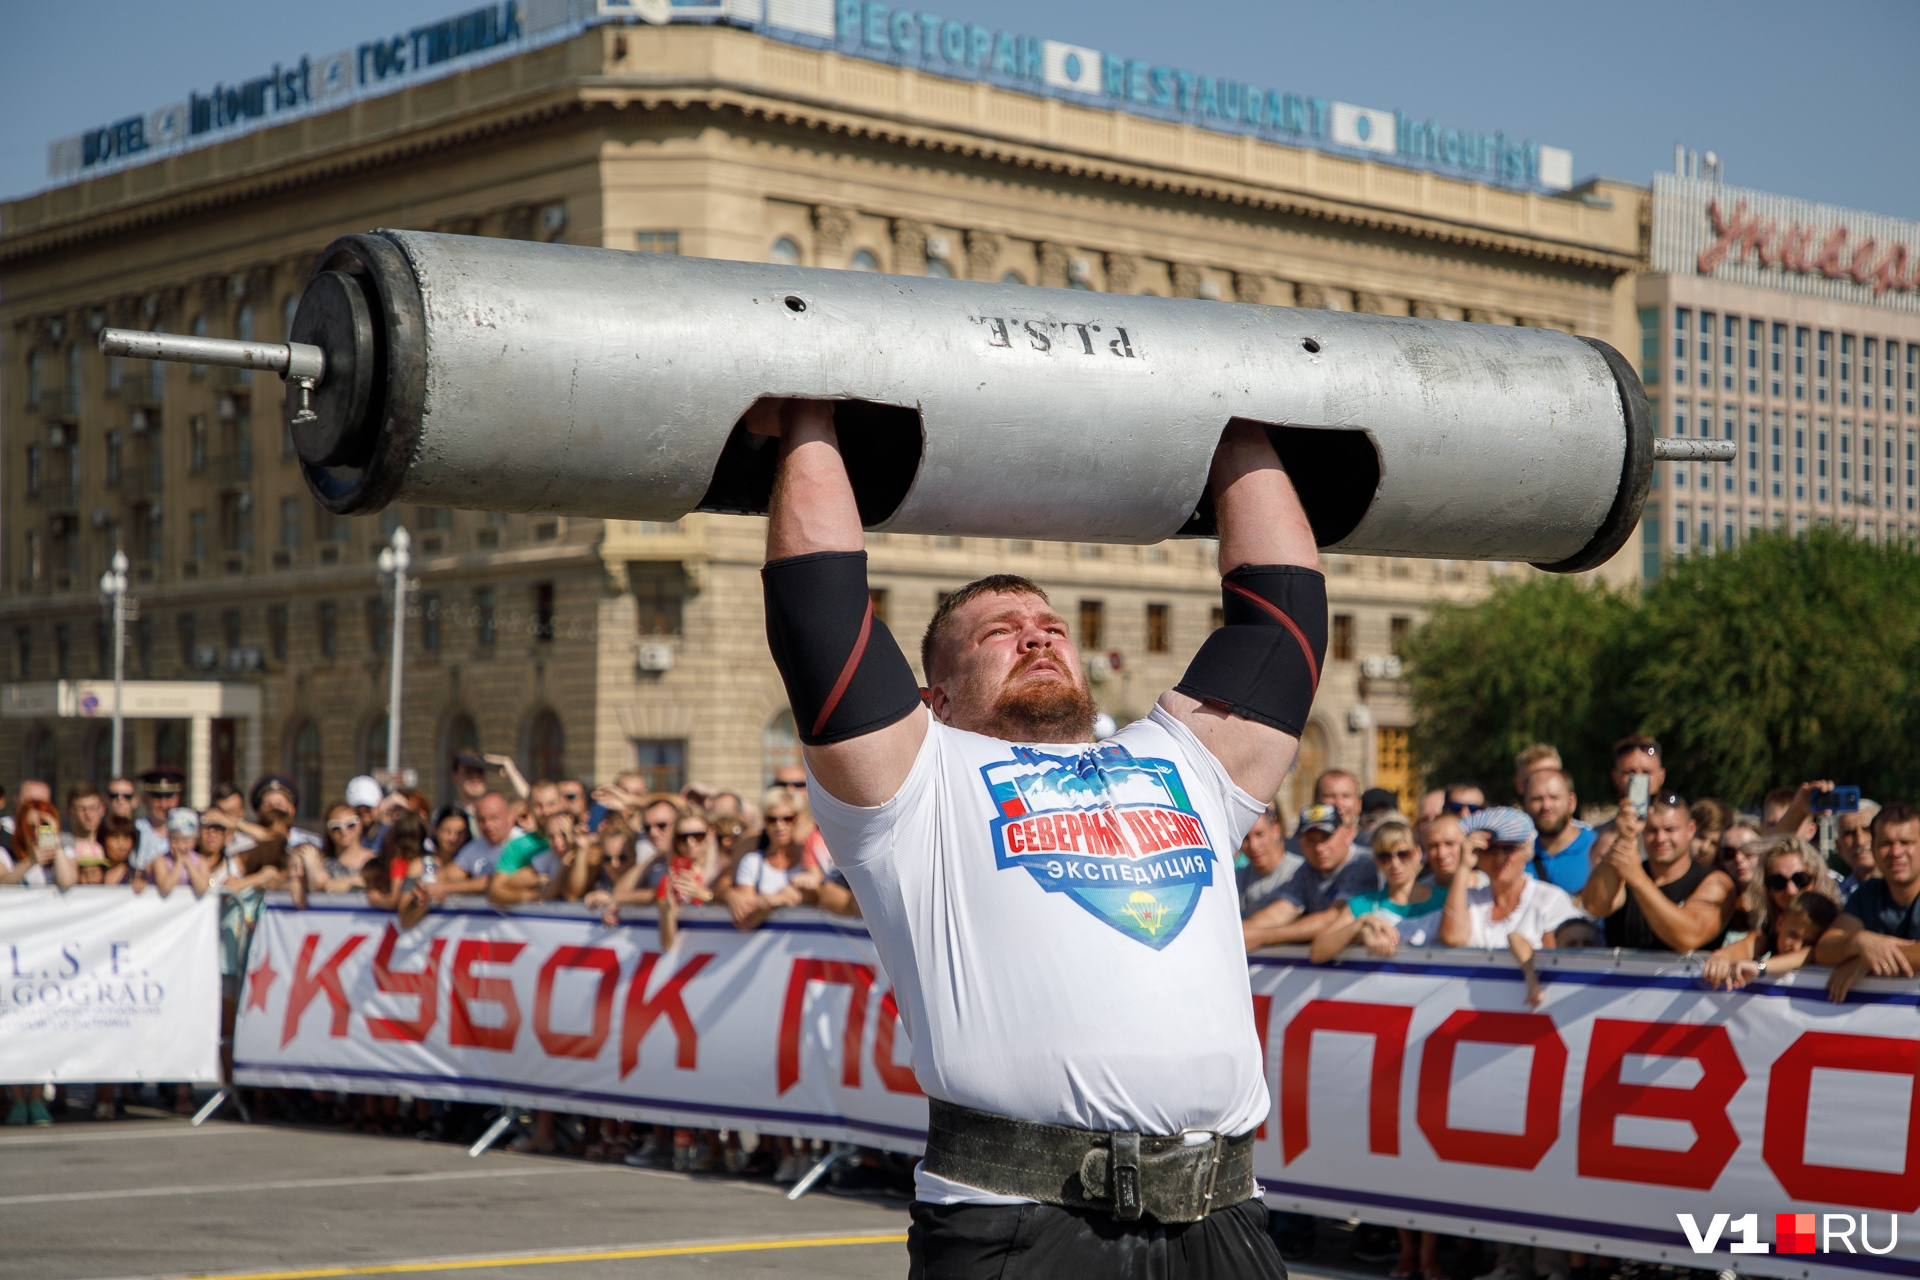 Самый сильный человек в России. Самый чильный человек в Росси. Самый сильный человек в мире в России. Самый сильный человек России 2012.